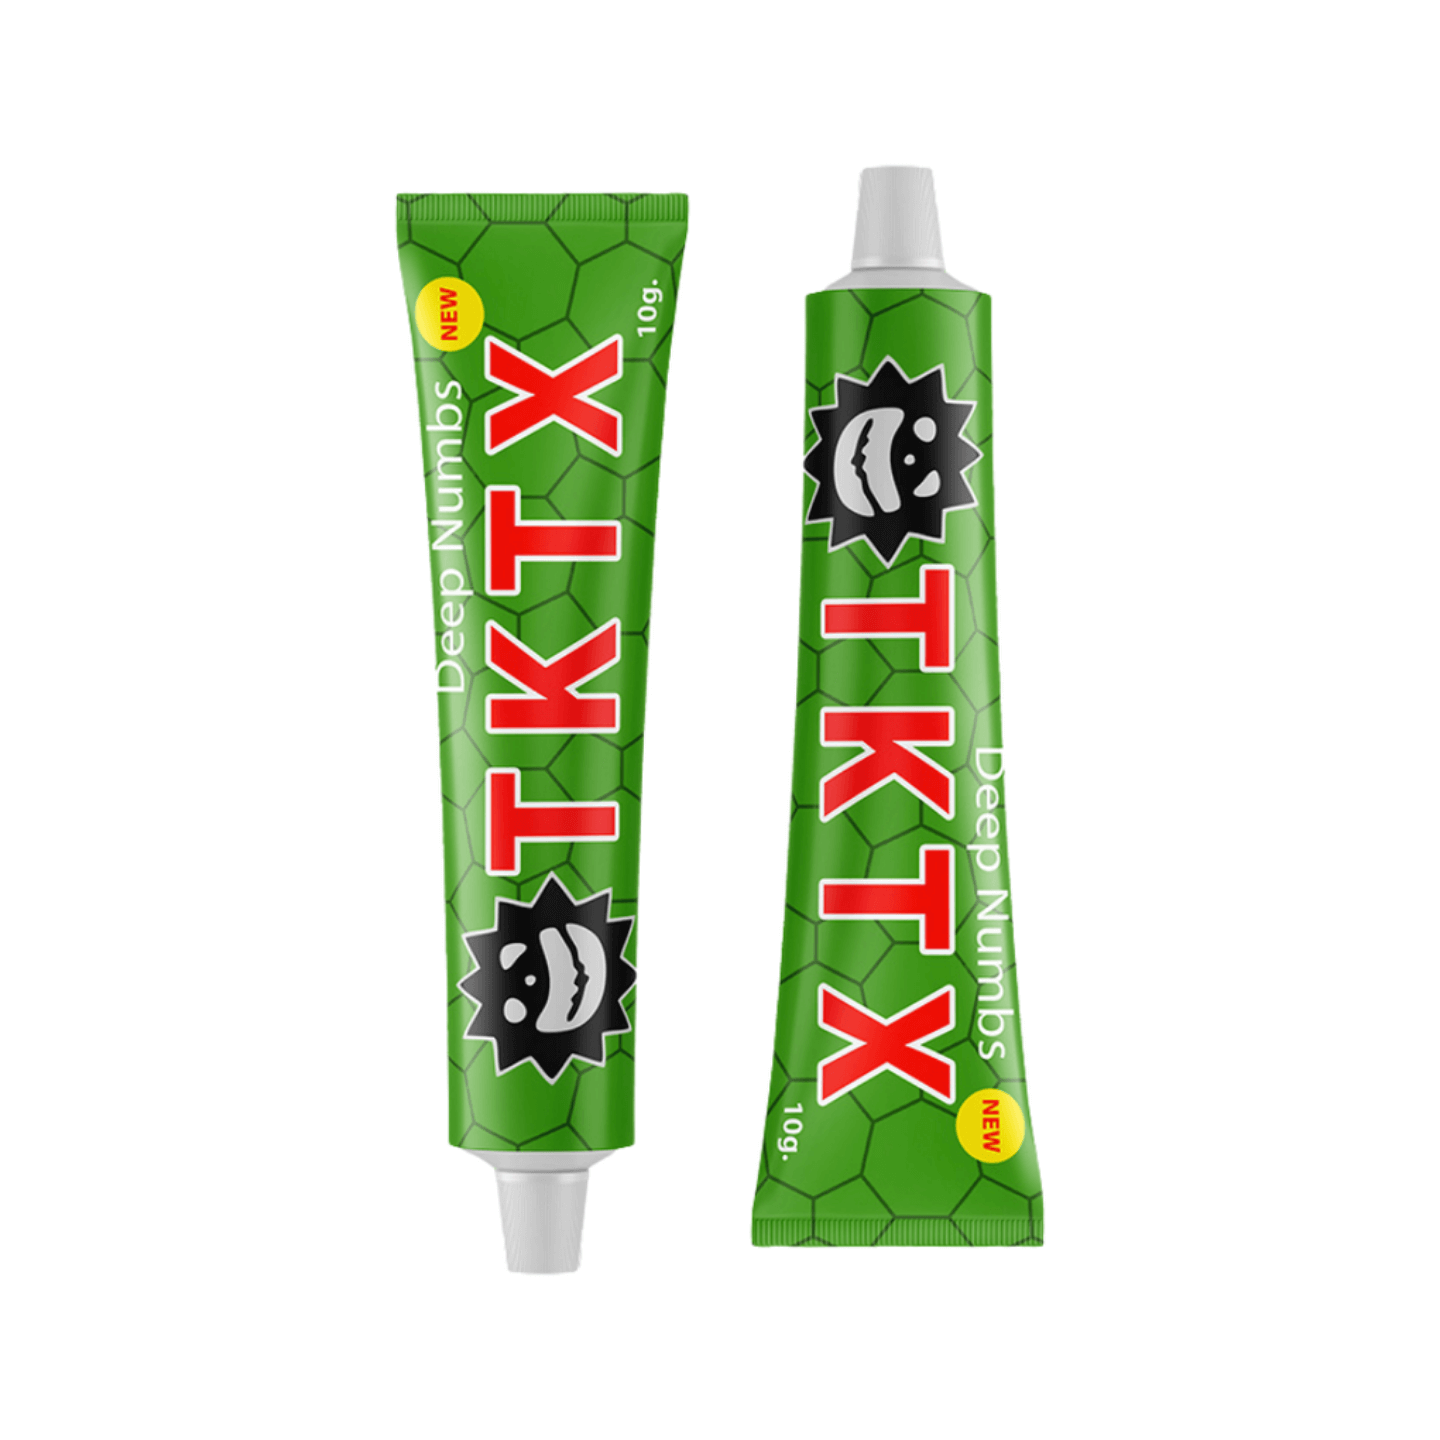 TKTX verdovingszalf crème Groen 75% Sale